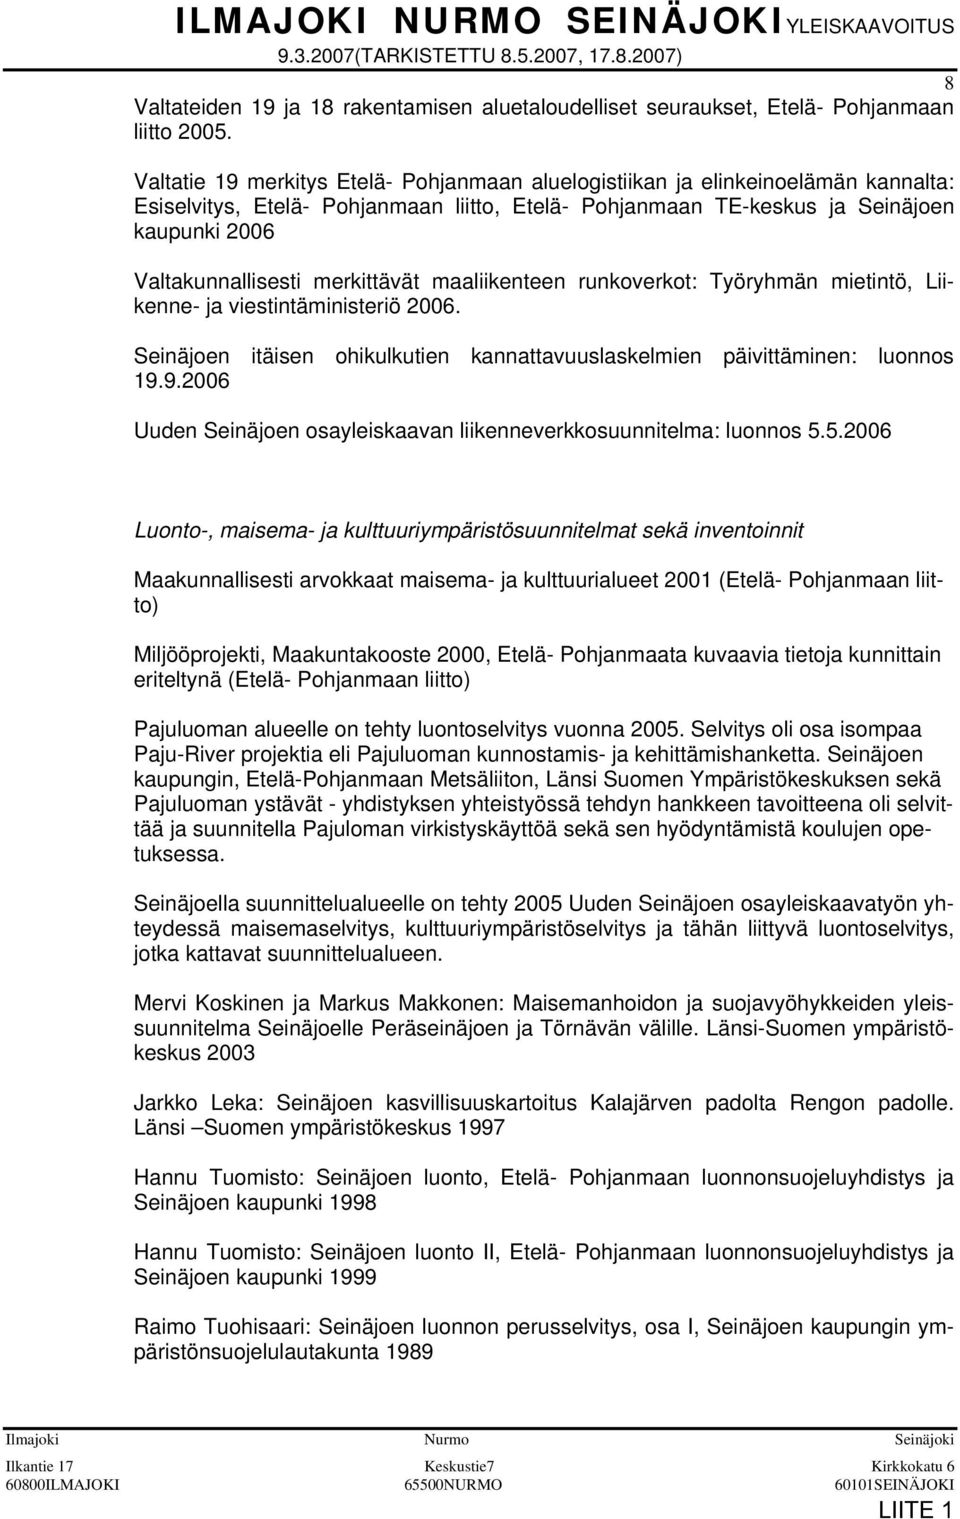 merkittävät maaliikenteen runkoverkot: Työryhmän mietintö, Liikenne- ja viestintäministeriö 2006. Seinäjoen itäisen ohikulkutien kannattavuuslaskelmien päivittäminen: luonnos 19.